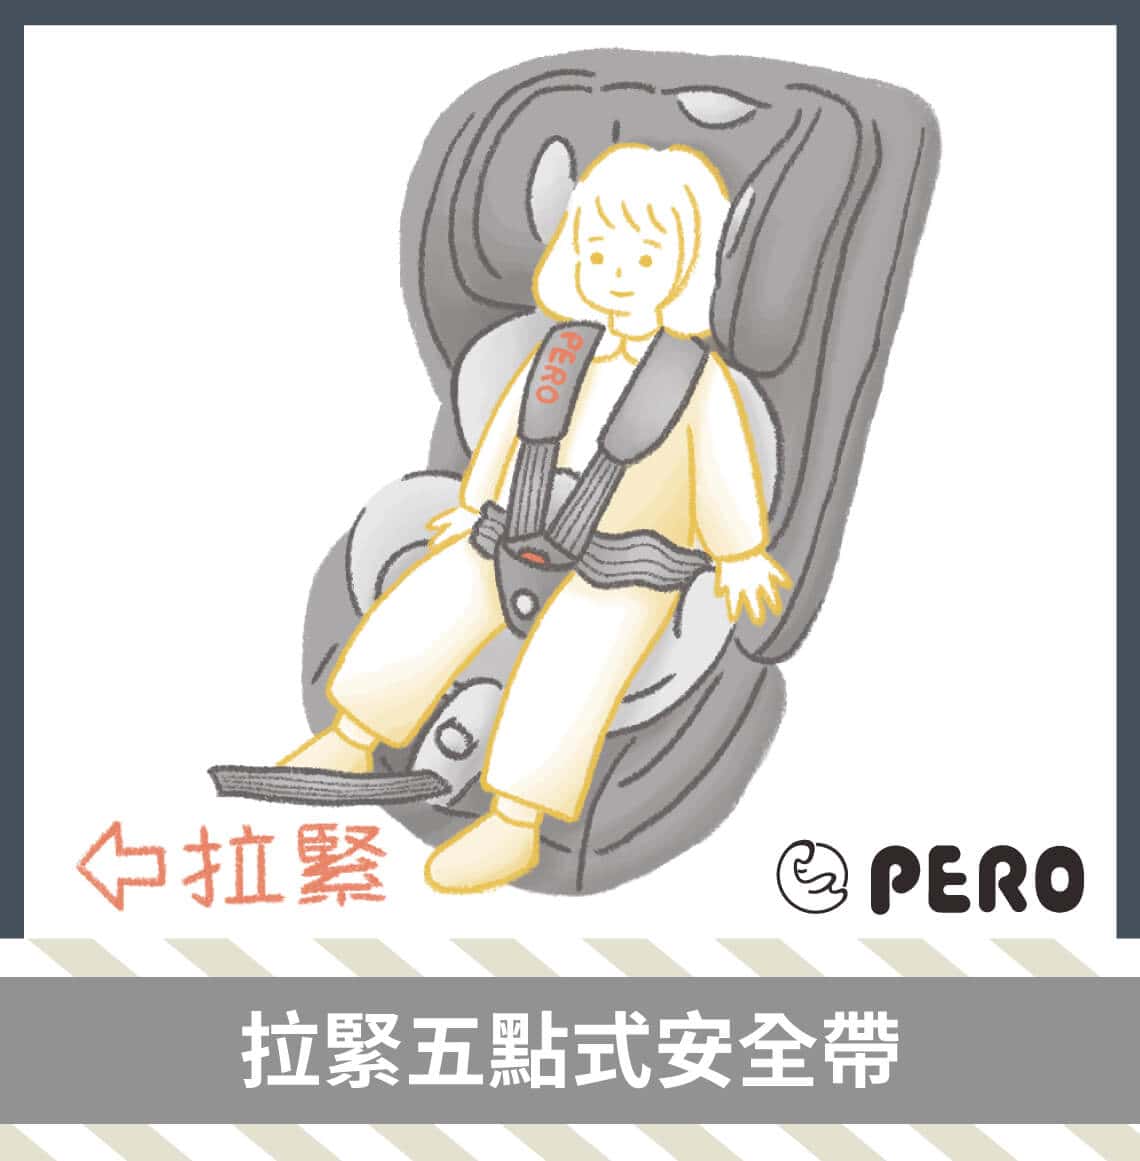 安全座椅安裝注意事項，確保兒童行車安全